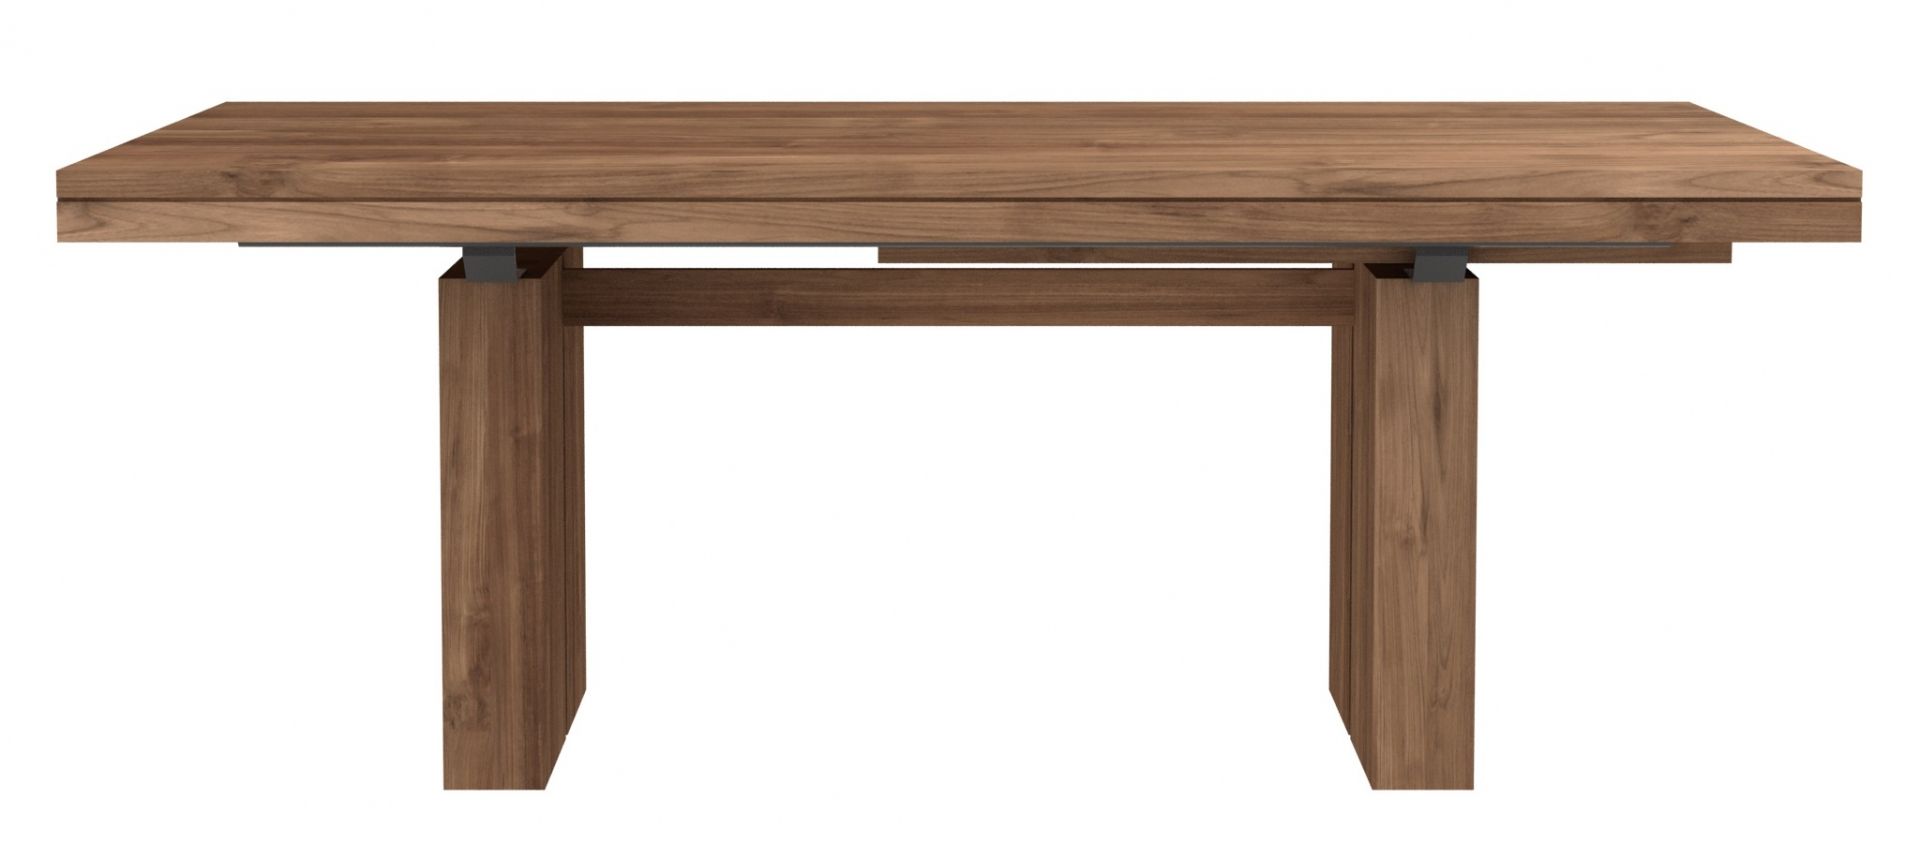 Ethnicraft designové jídelní rozkládací stoly Double Dining Table (200/300 x 100 cm) - DESIGNPROPAGANDA